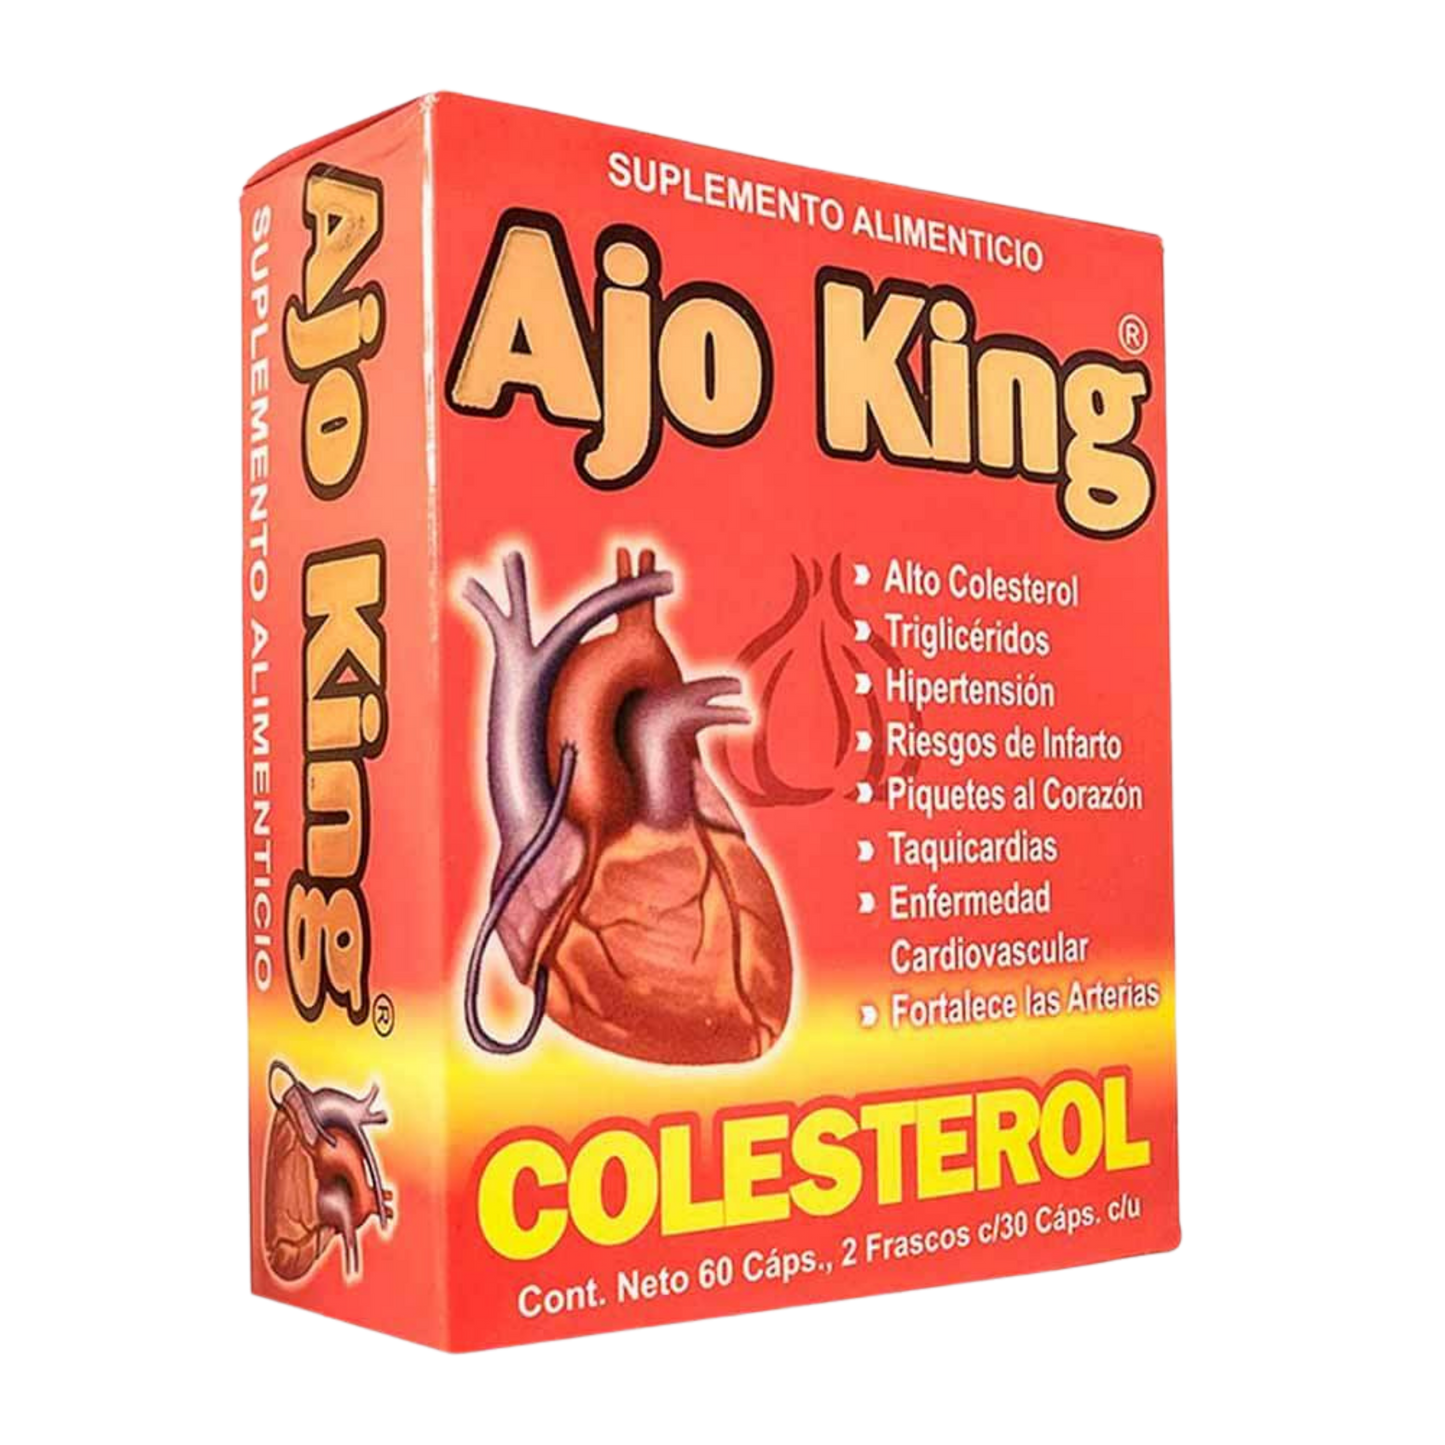 Ajo King Colesterol